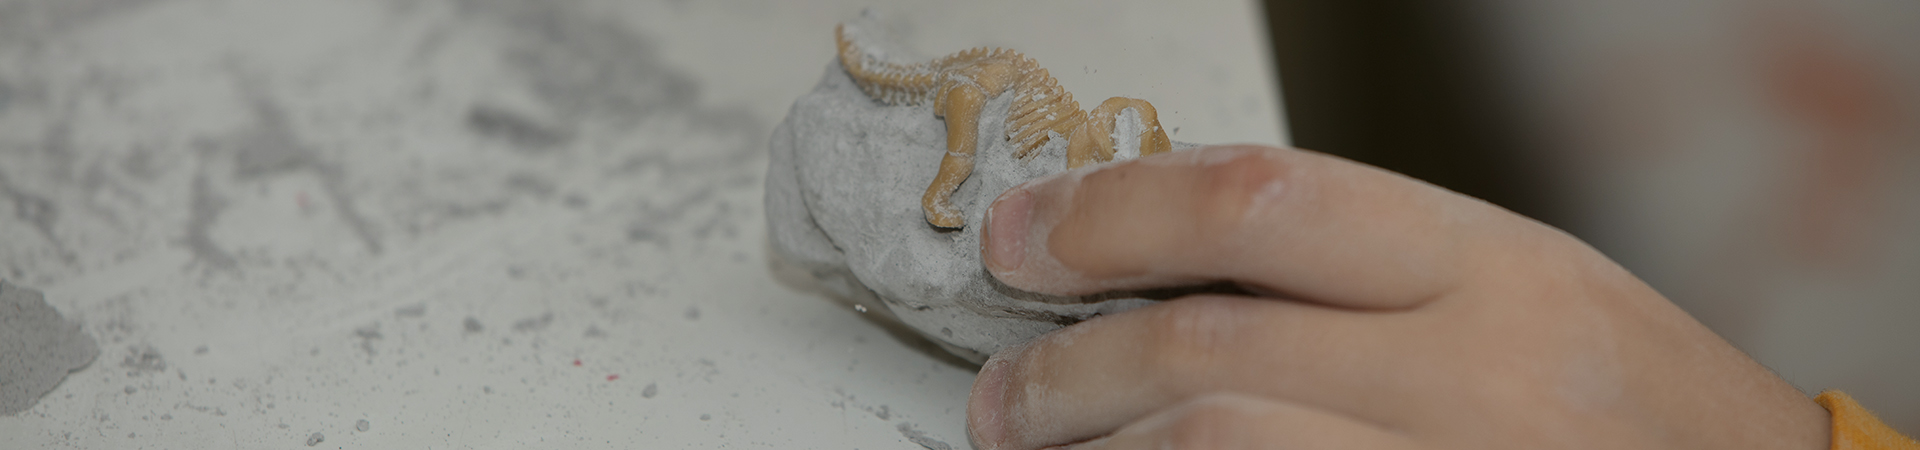 Küçük bir arkeolog için, çocukların elleriyle fosil bulmaya yönelik eğitici bir oyunun görüntüsü